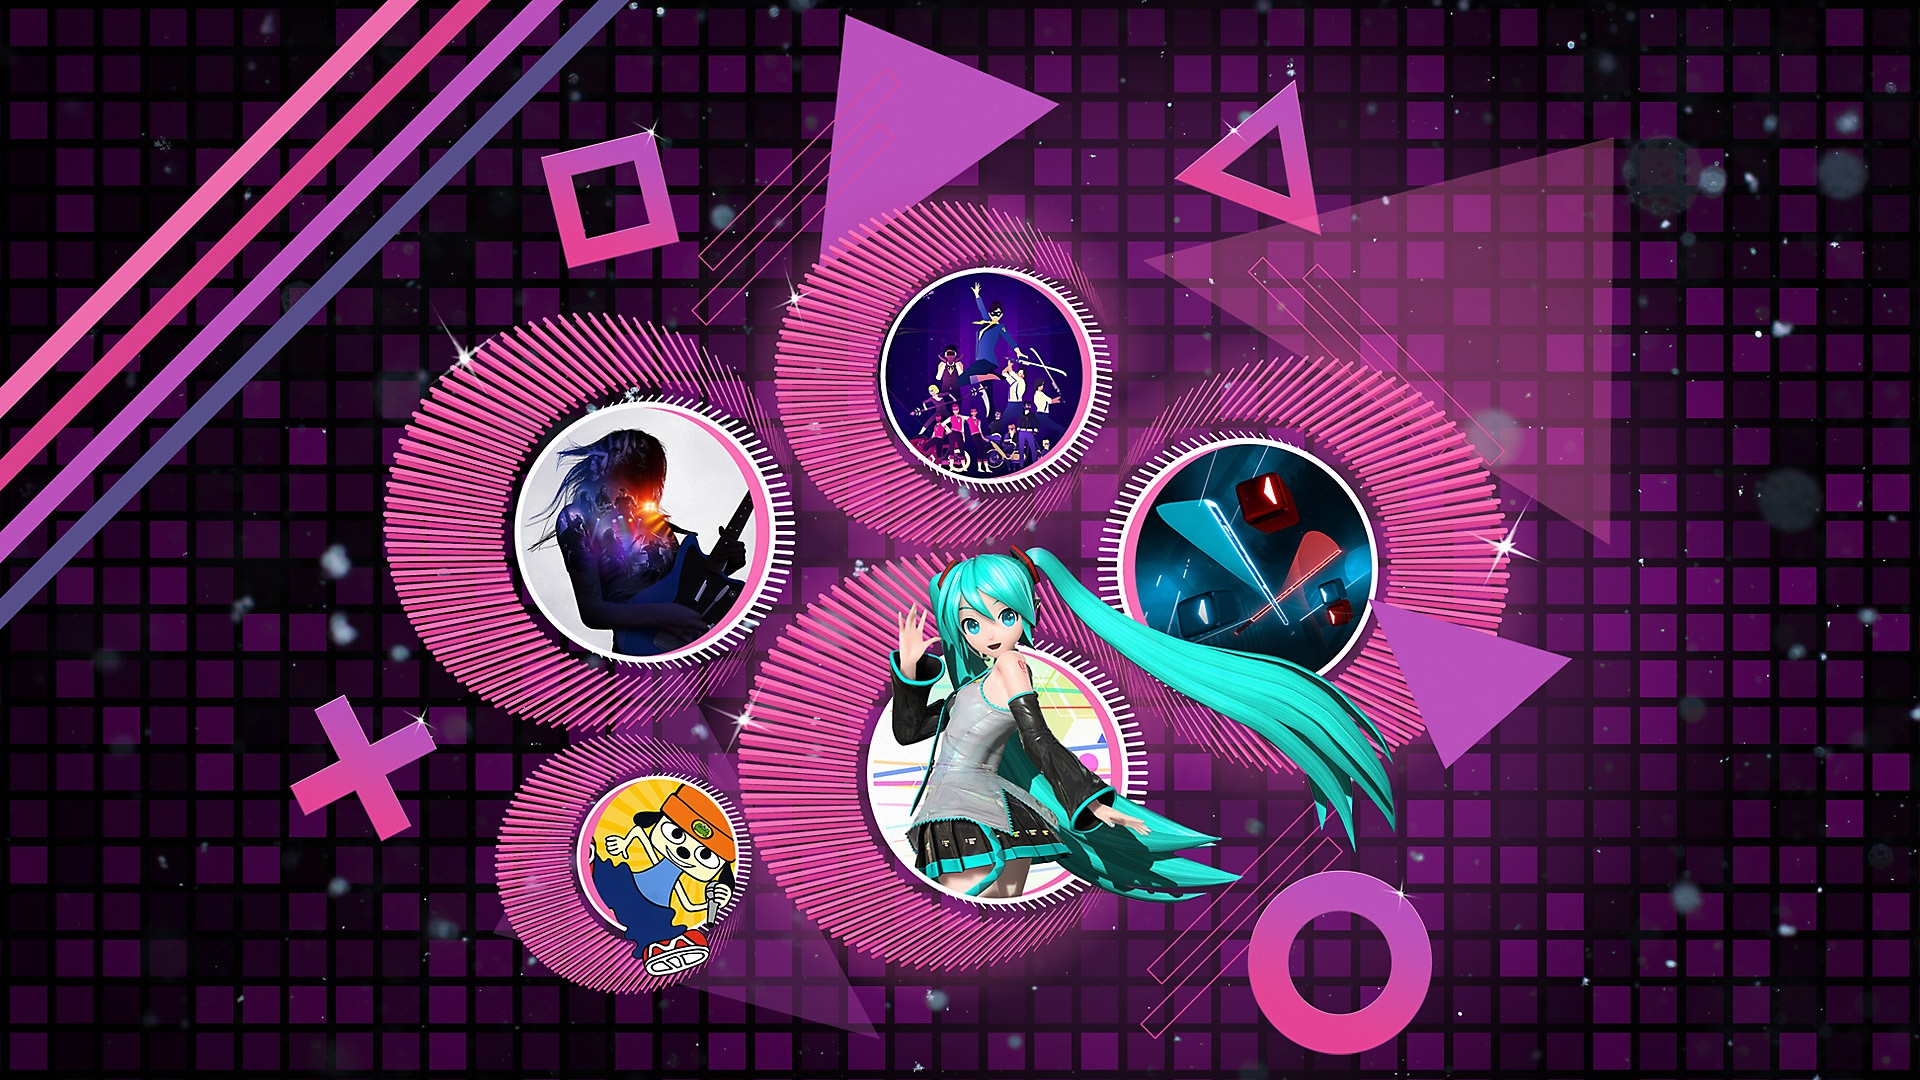 Arte promocional de Mejores juegos de ritmo para PS4 y PS5 con la aparición de Rock Band 4, PaRappa the Rapper Remastered, Hatsune Miku Project Diva X, Beat Saber y Sayonara Wild Hearts.